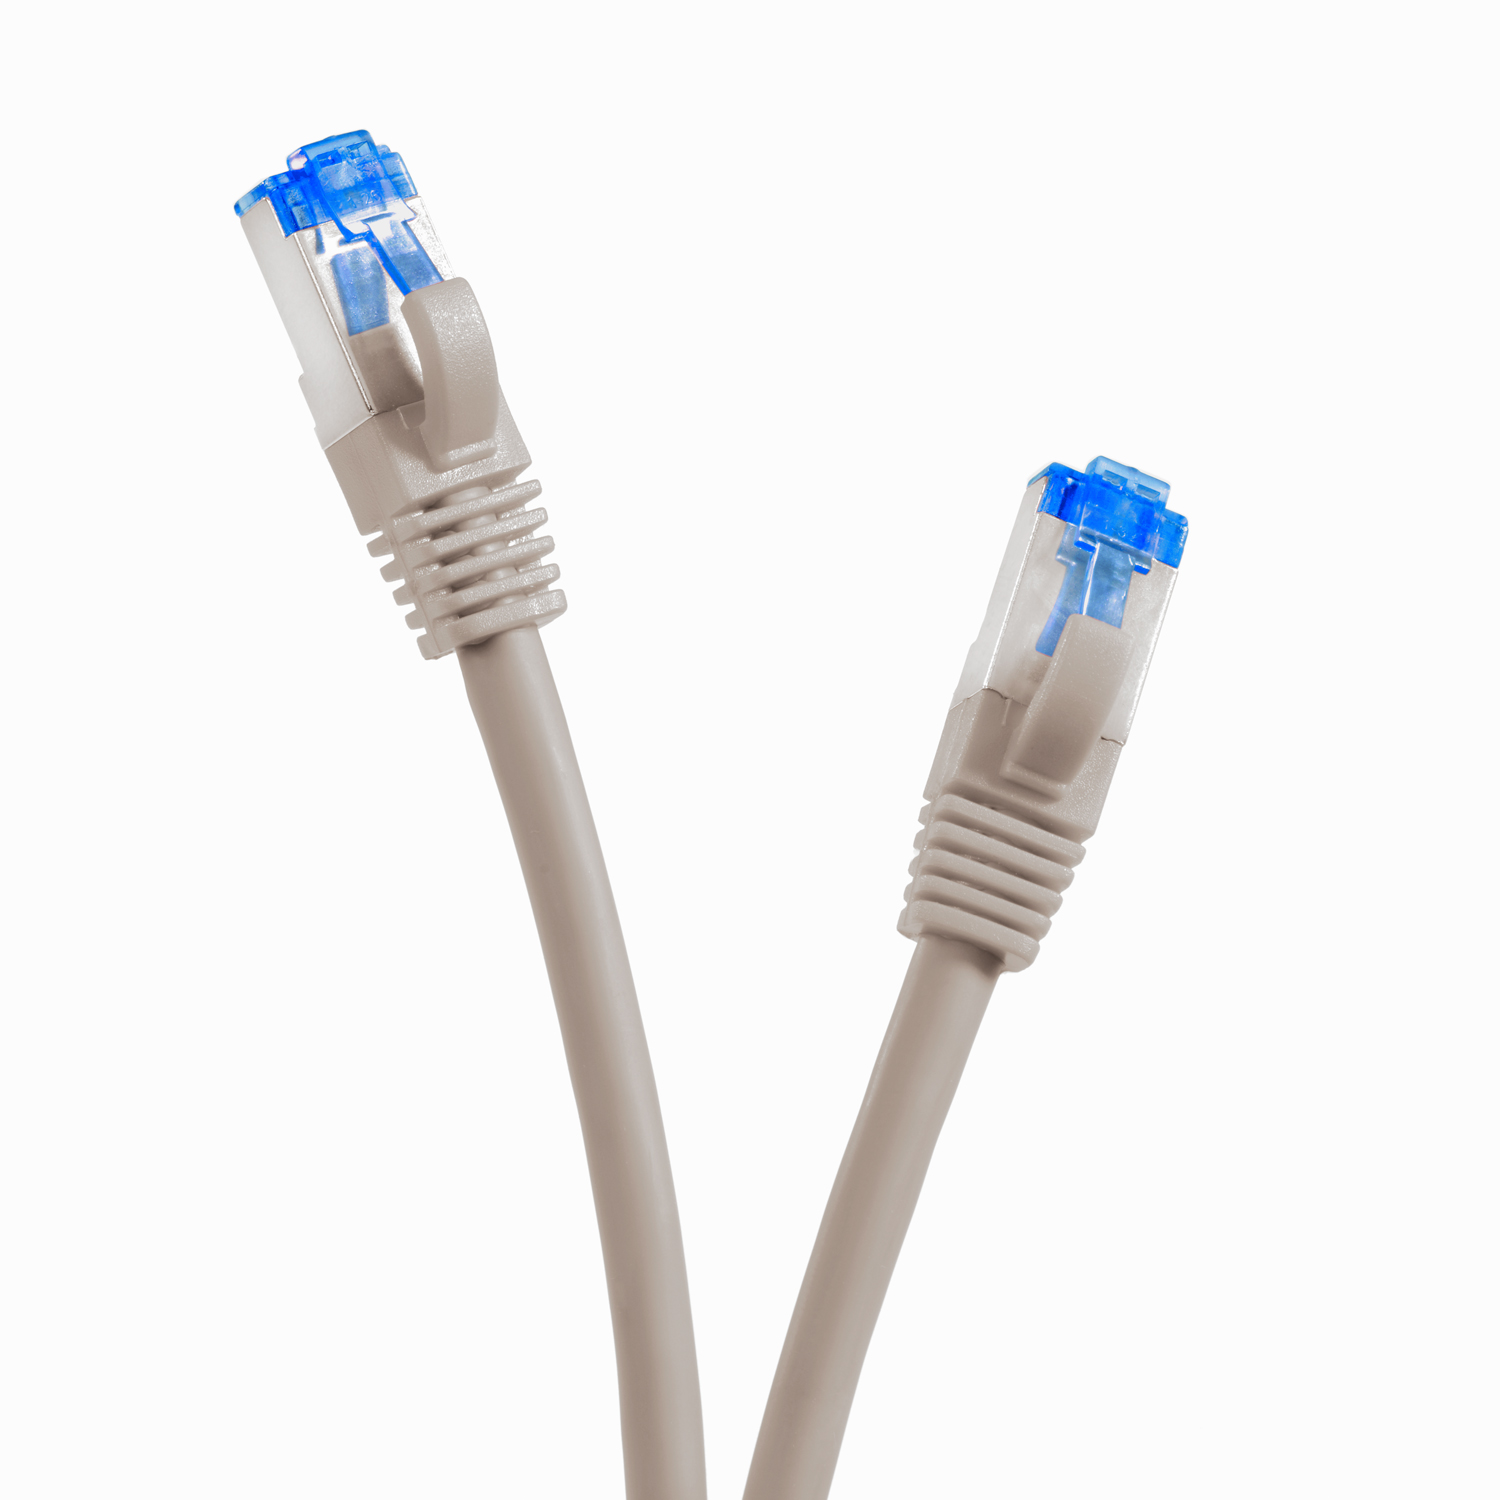 S/FTP TPFNET / Netzwerkkabel grau, m Patchkabel 1m 10GBit, Netzwerkkabel, 1